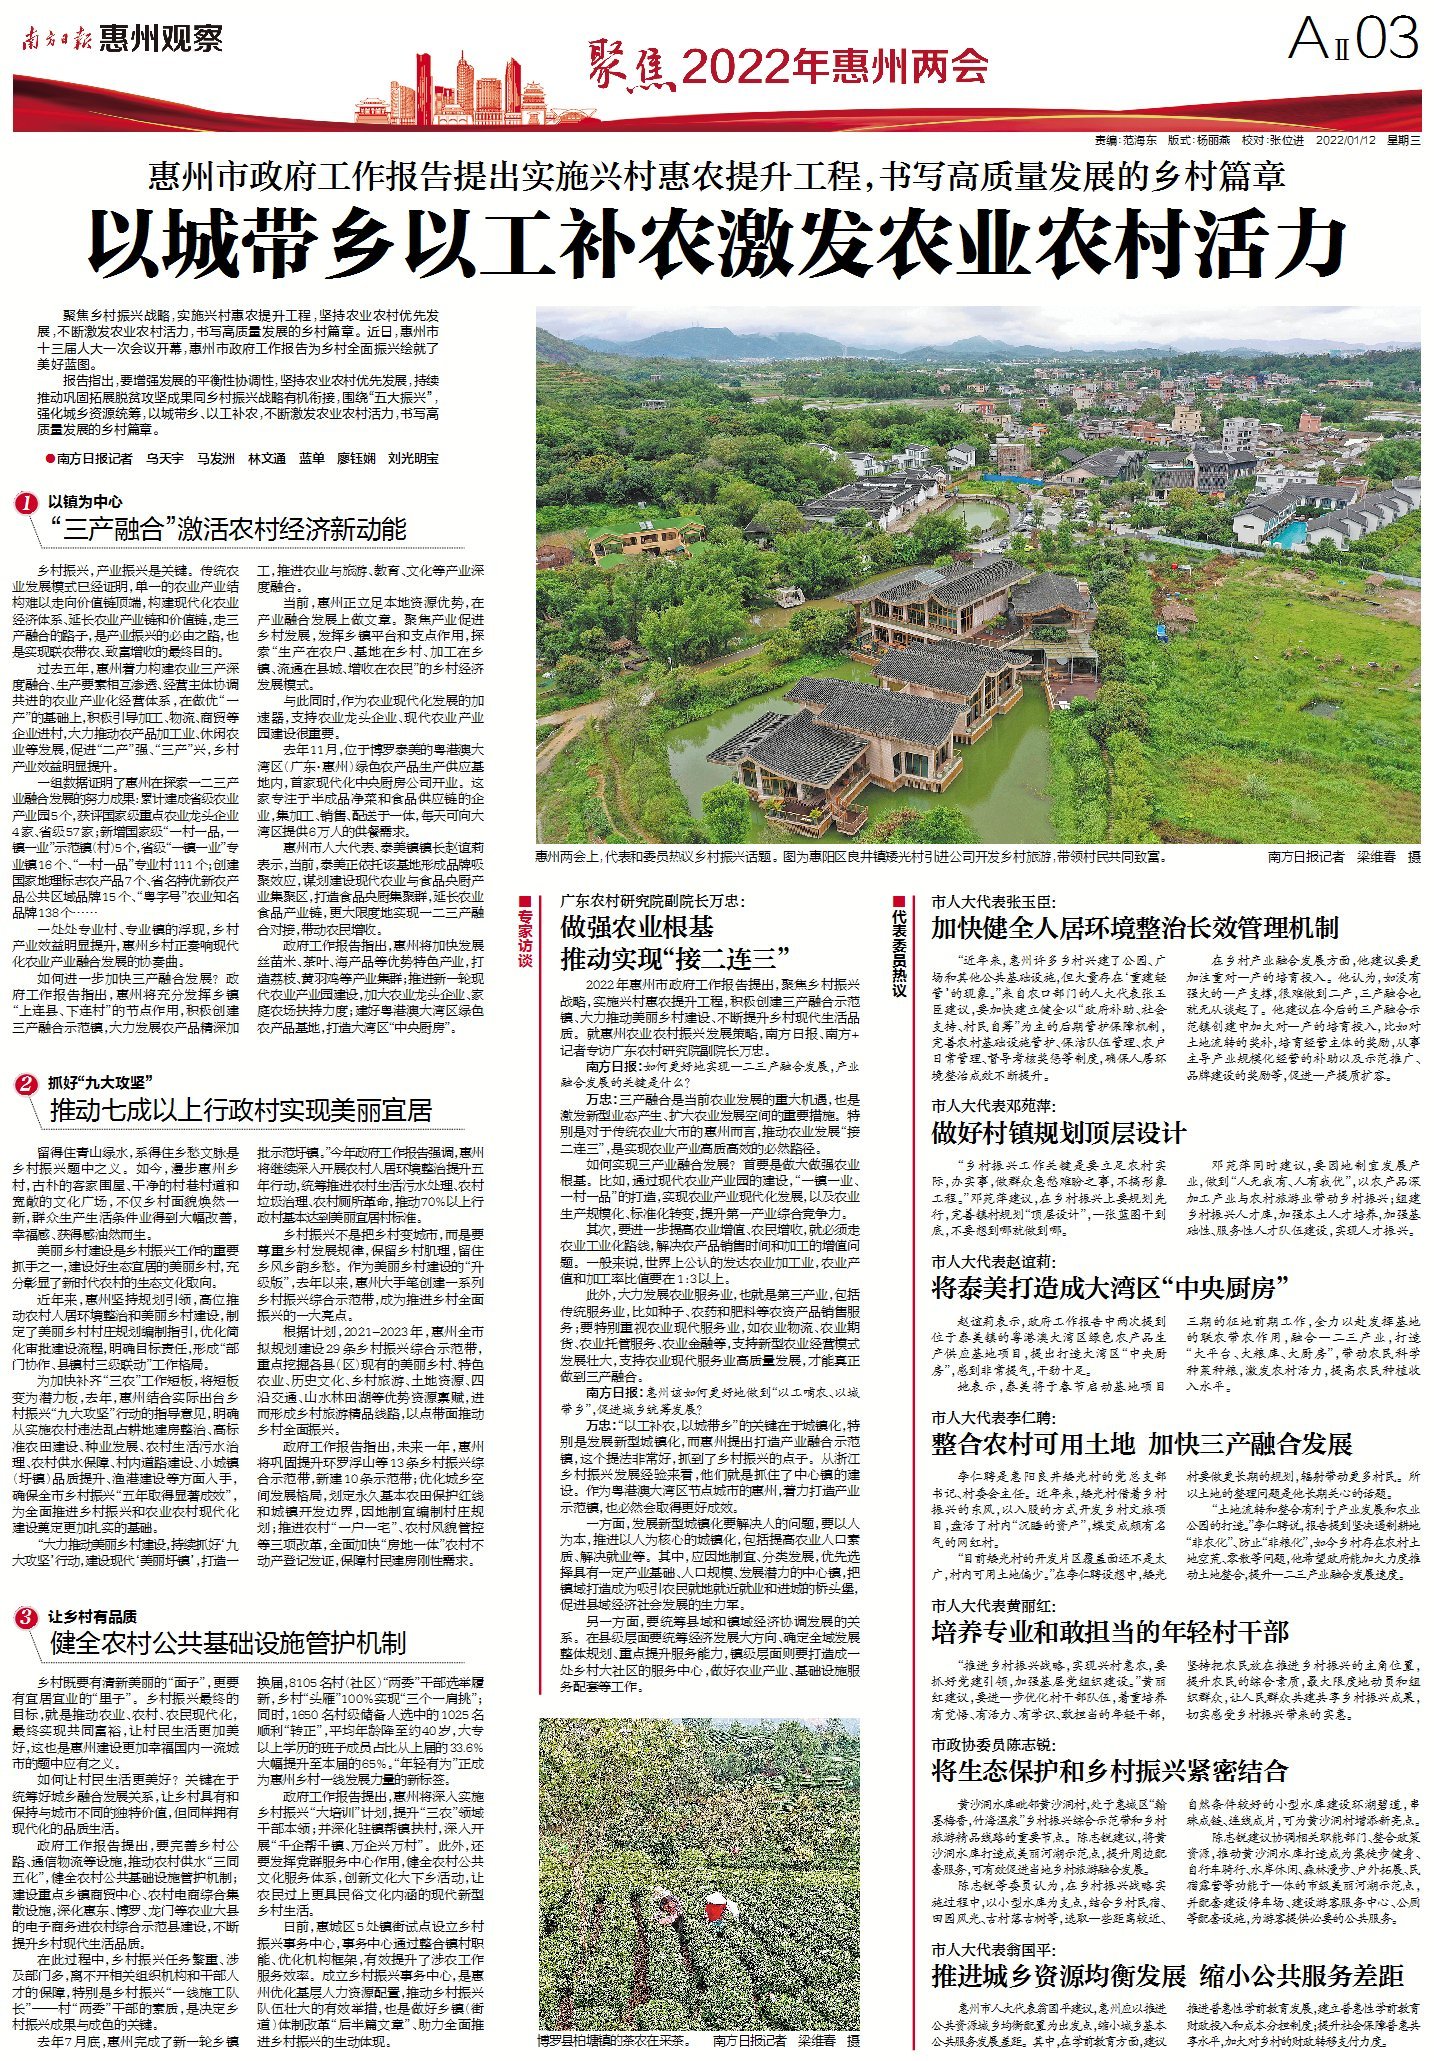 2022年惠州市两会南方日报·惠州观察关注乡村振兴话题。